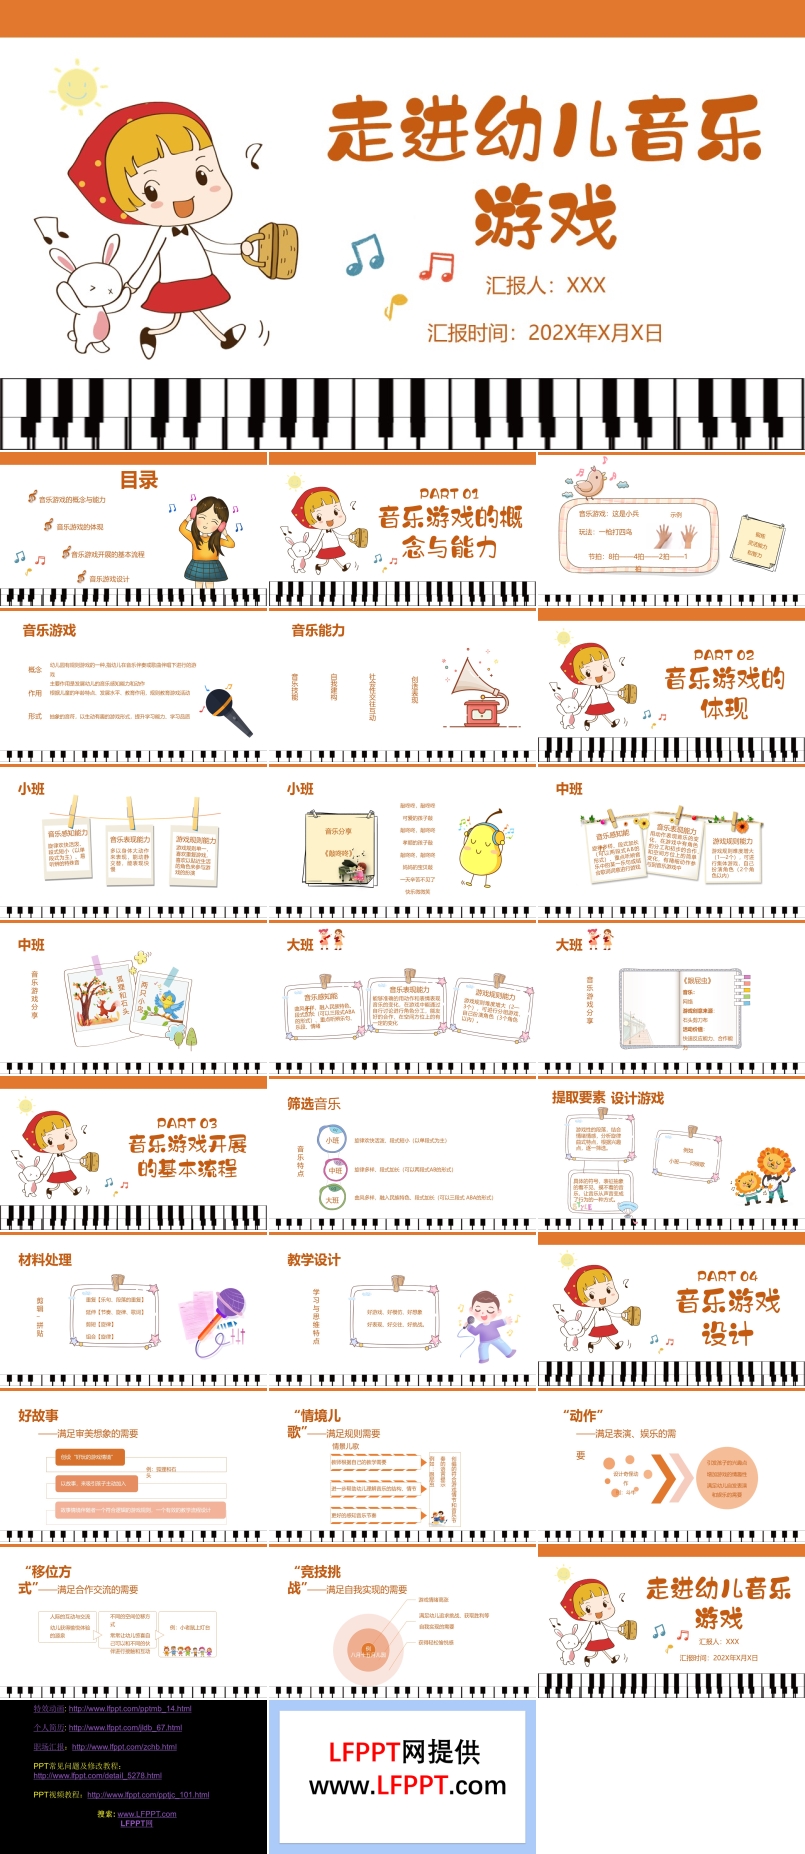 幼儿音乐游戏教育概念流程设计PPT课件模板